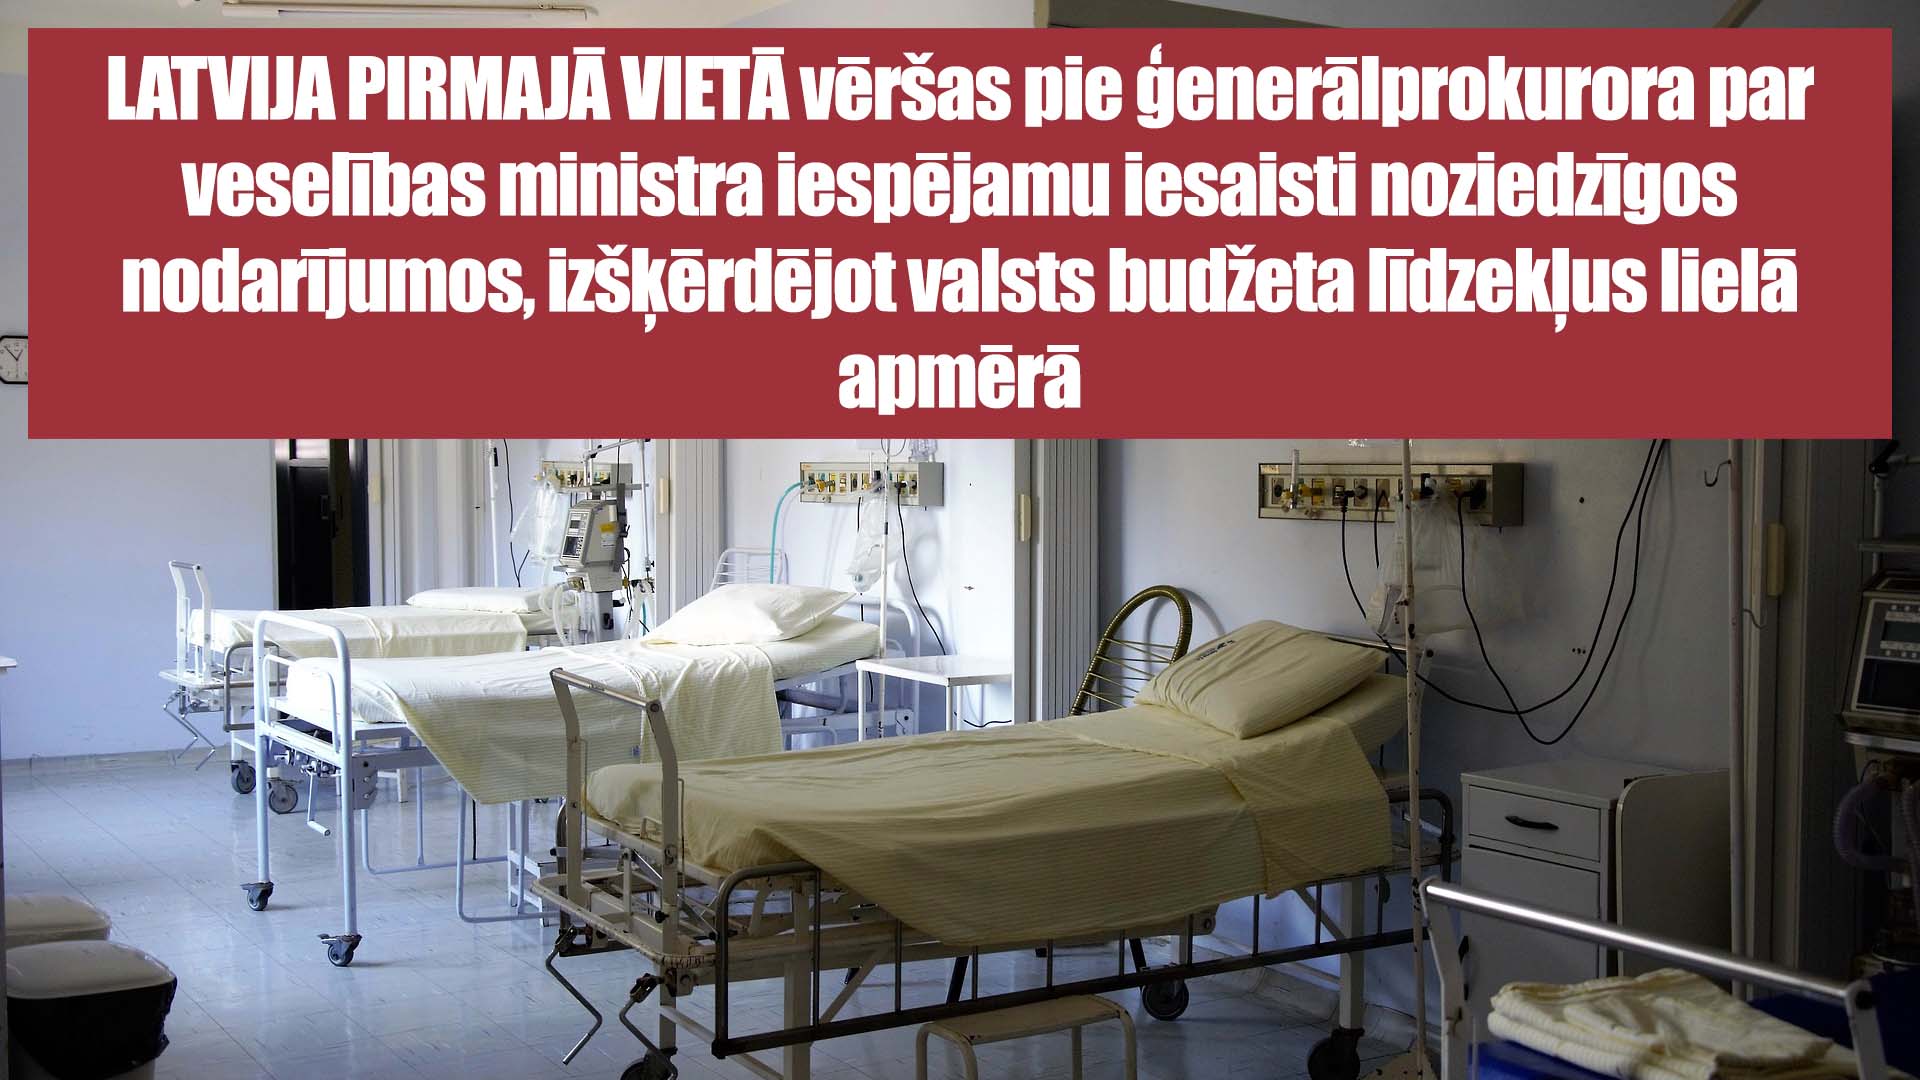 LATVIJA PIRMAJĀ VIETĀ vēršas pie ģenerālprokurora par veselības ministra iespējamu iesaisti noziedzīgos nodarījumos, izšķērdējot valsts budžeta līdzekļus lielā apmērā